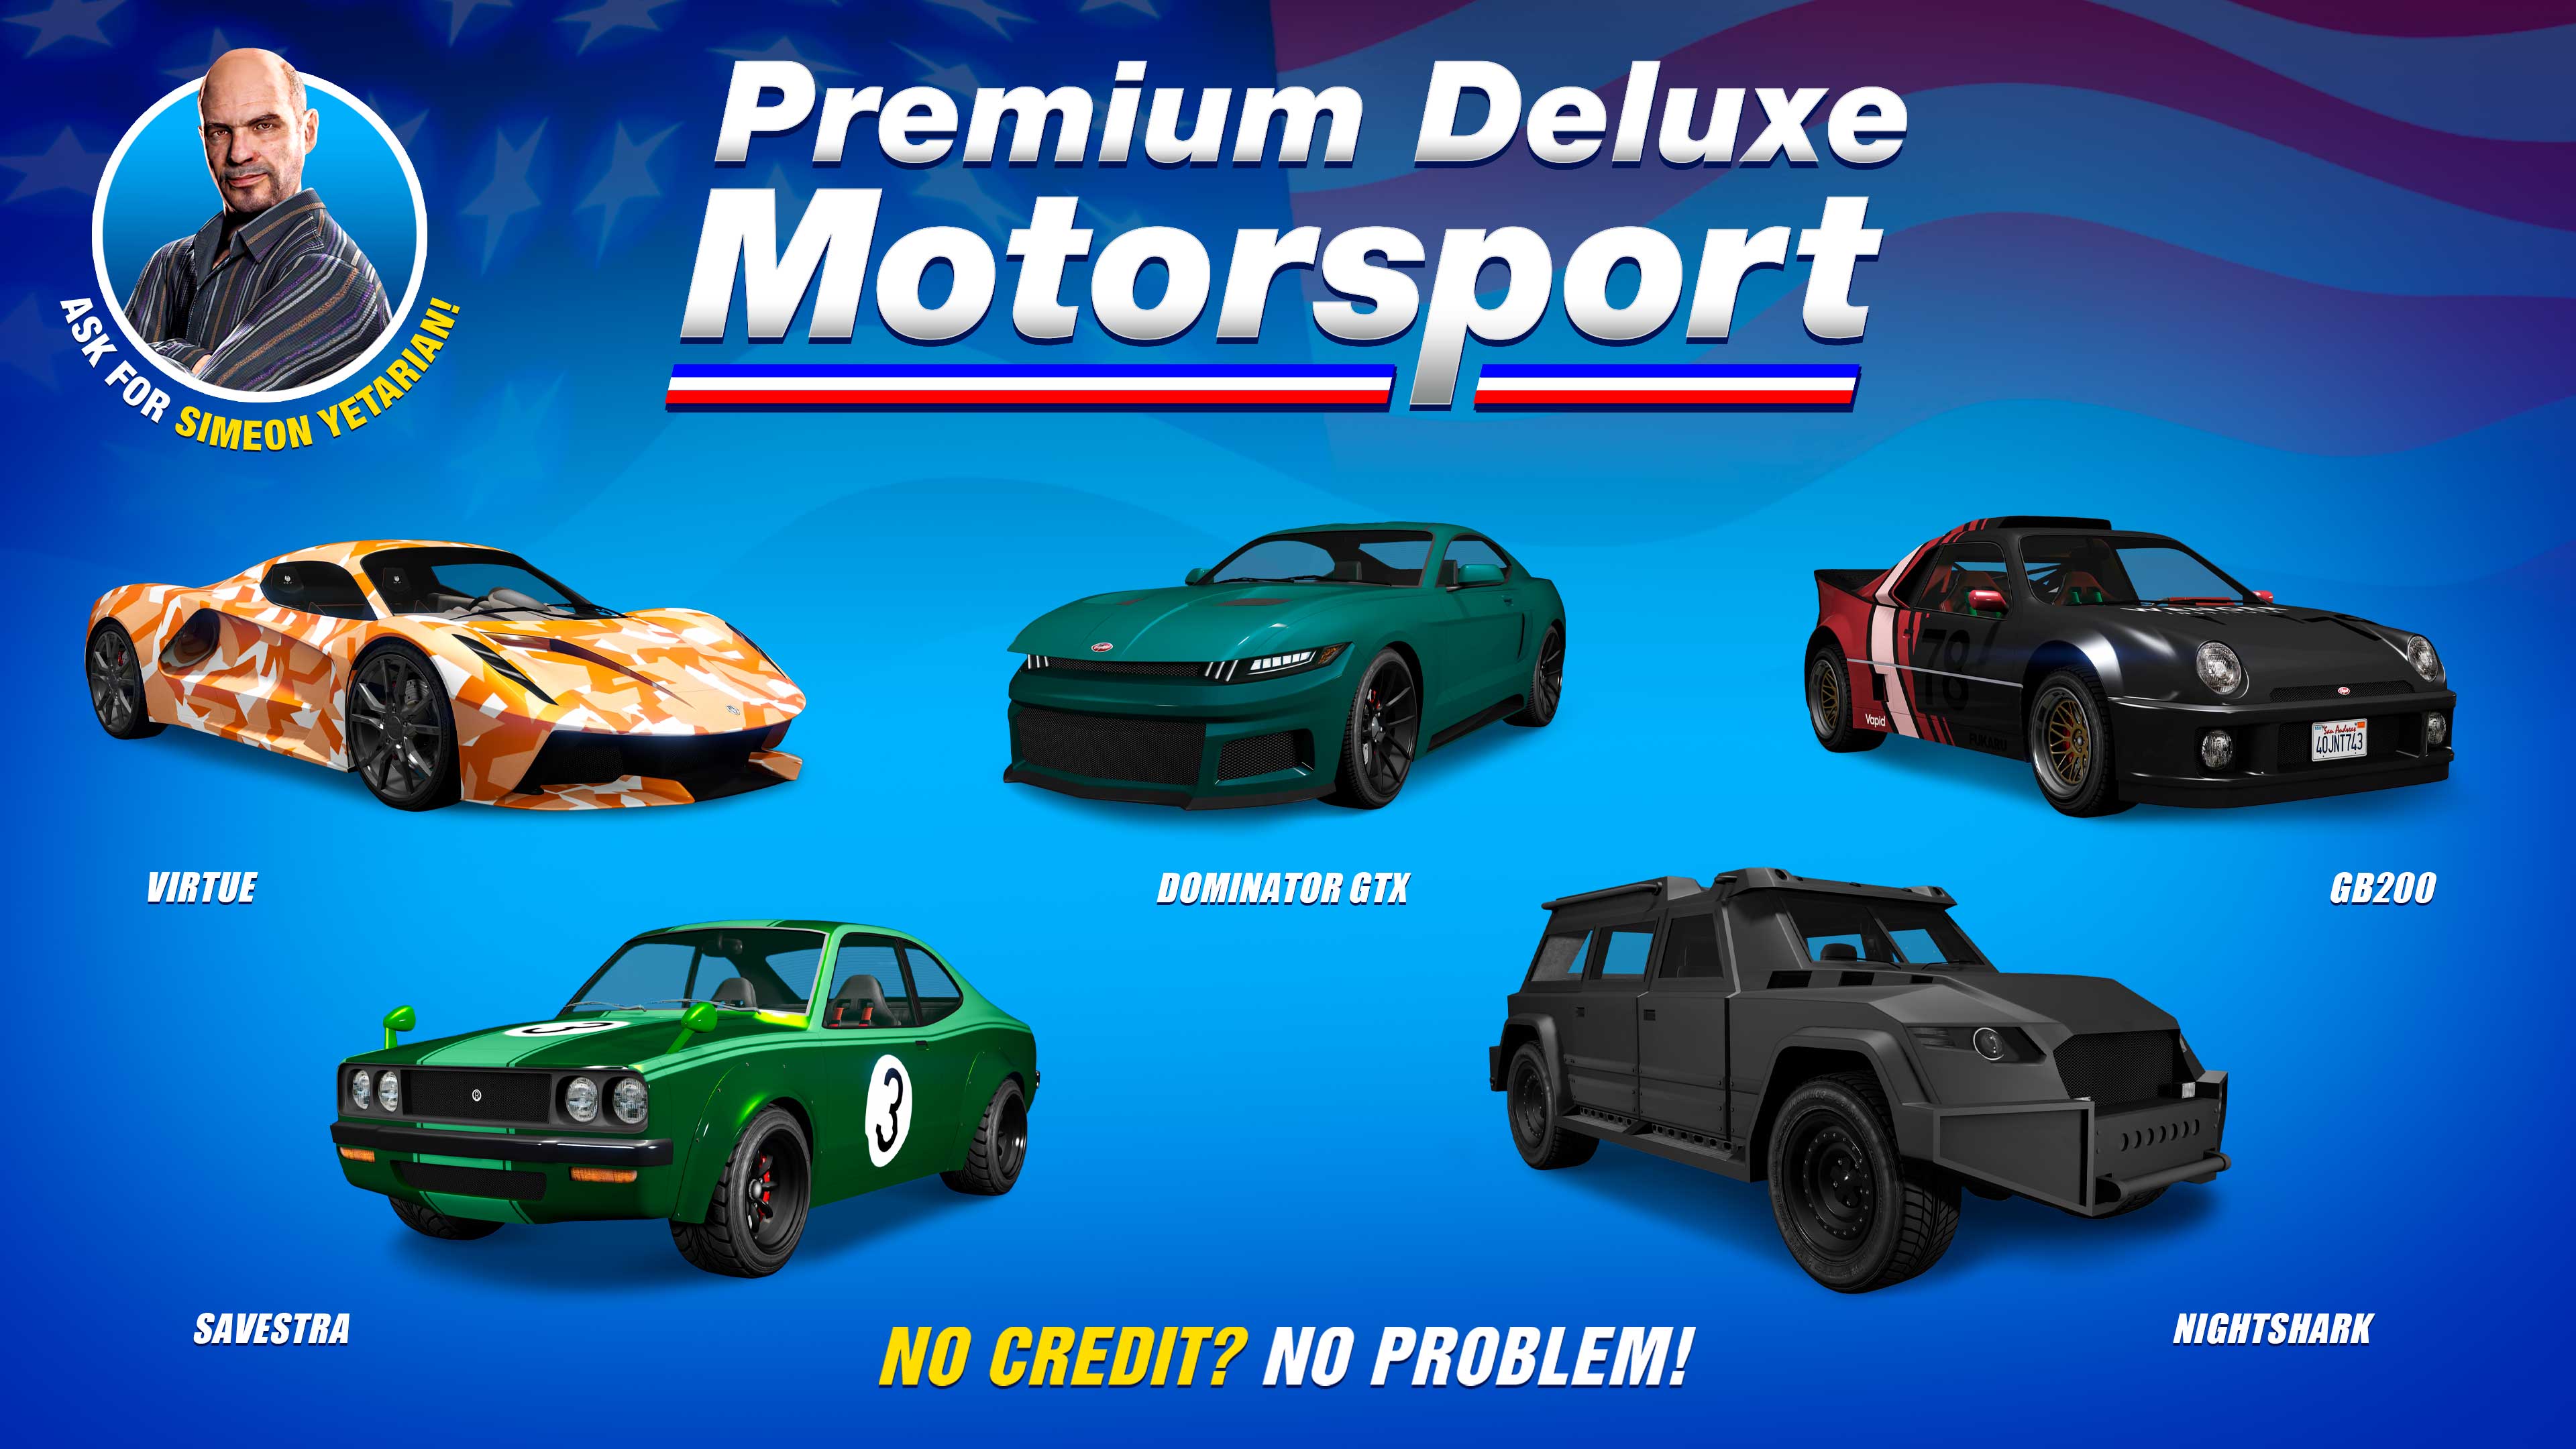 Premium Deluxe Motorsport Showroom poster